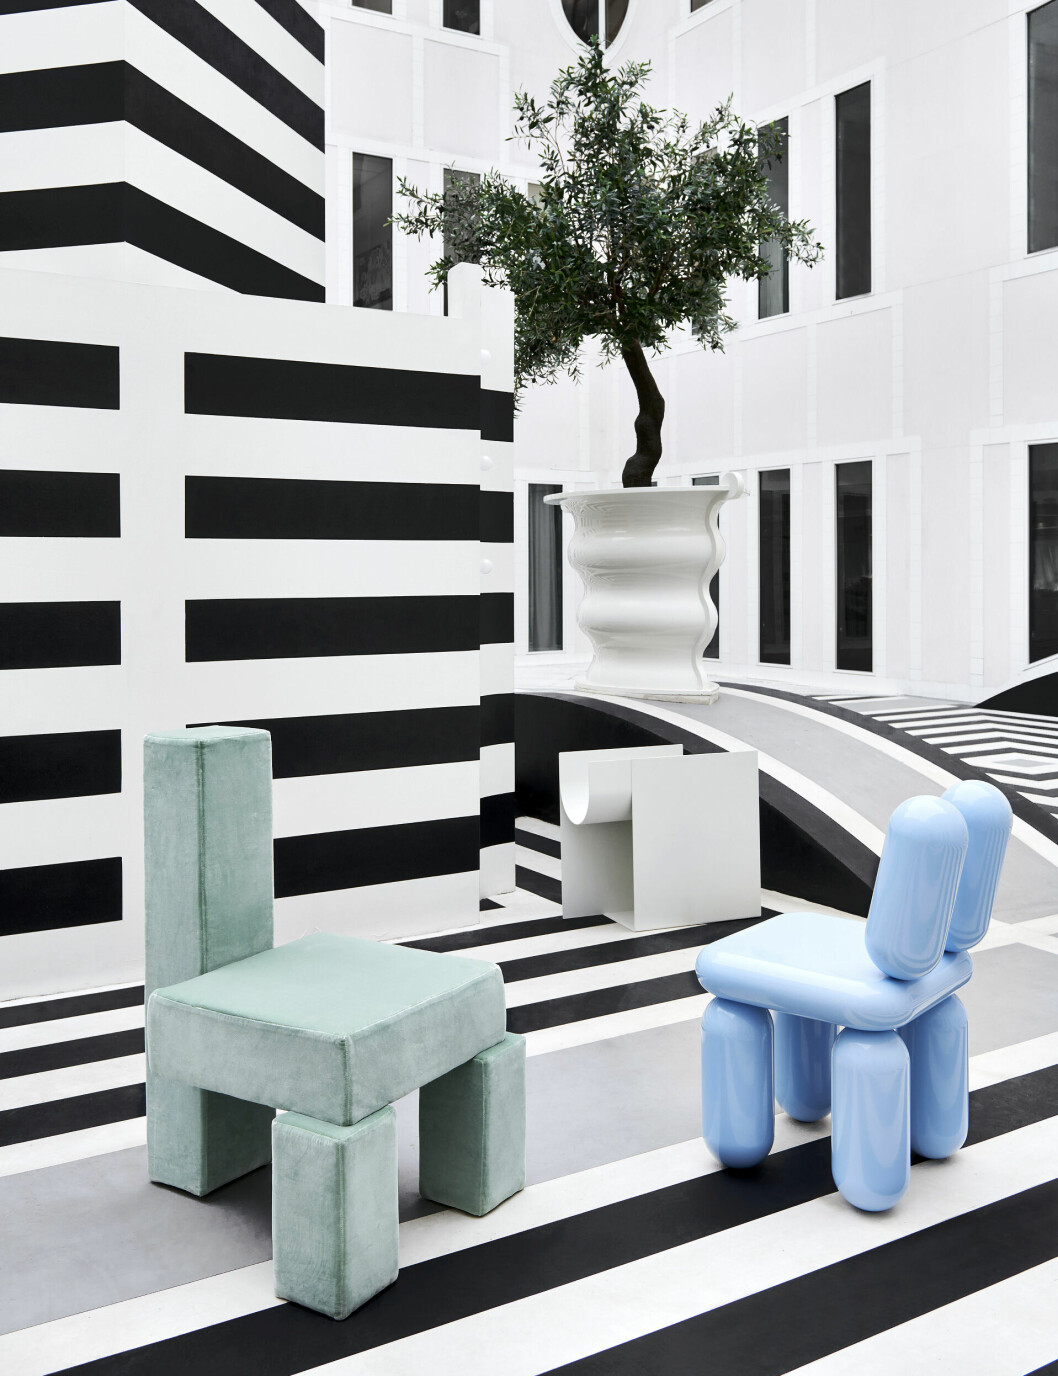 grön och blå stol i svartvit randig stylad miljö